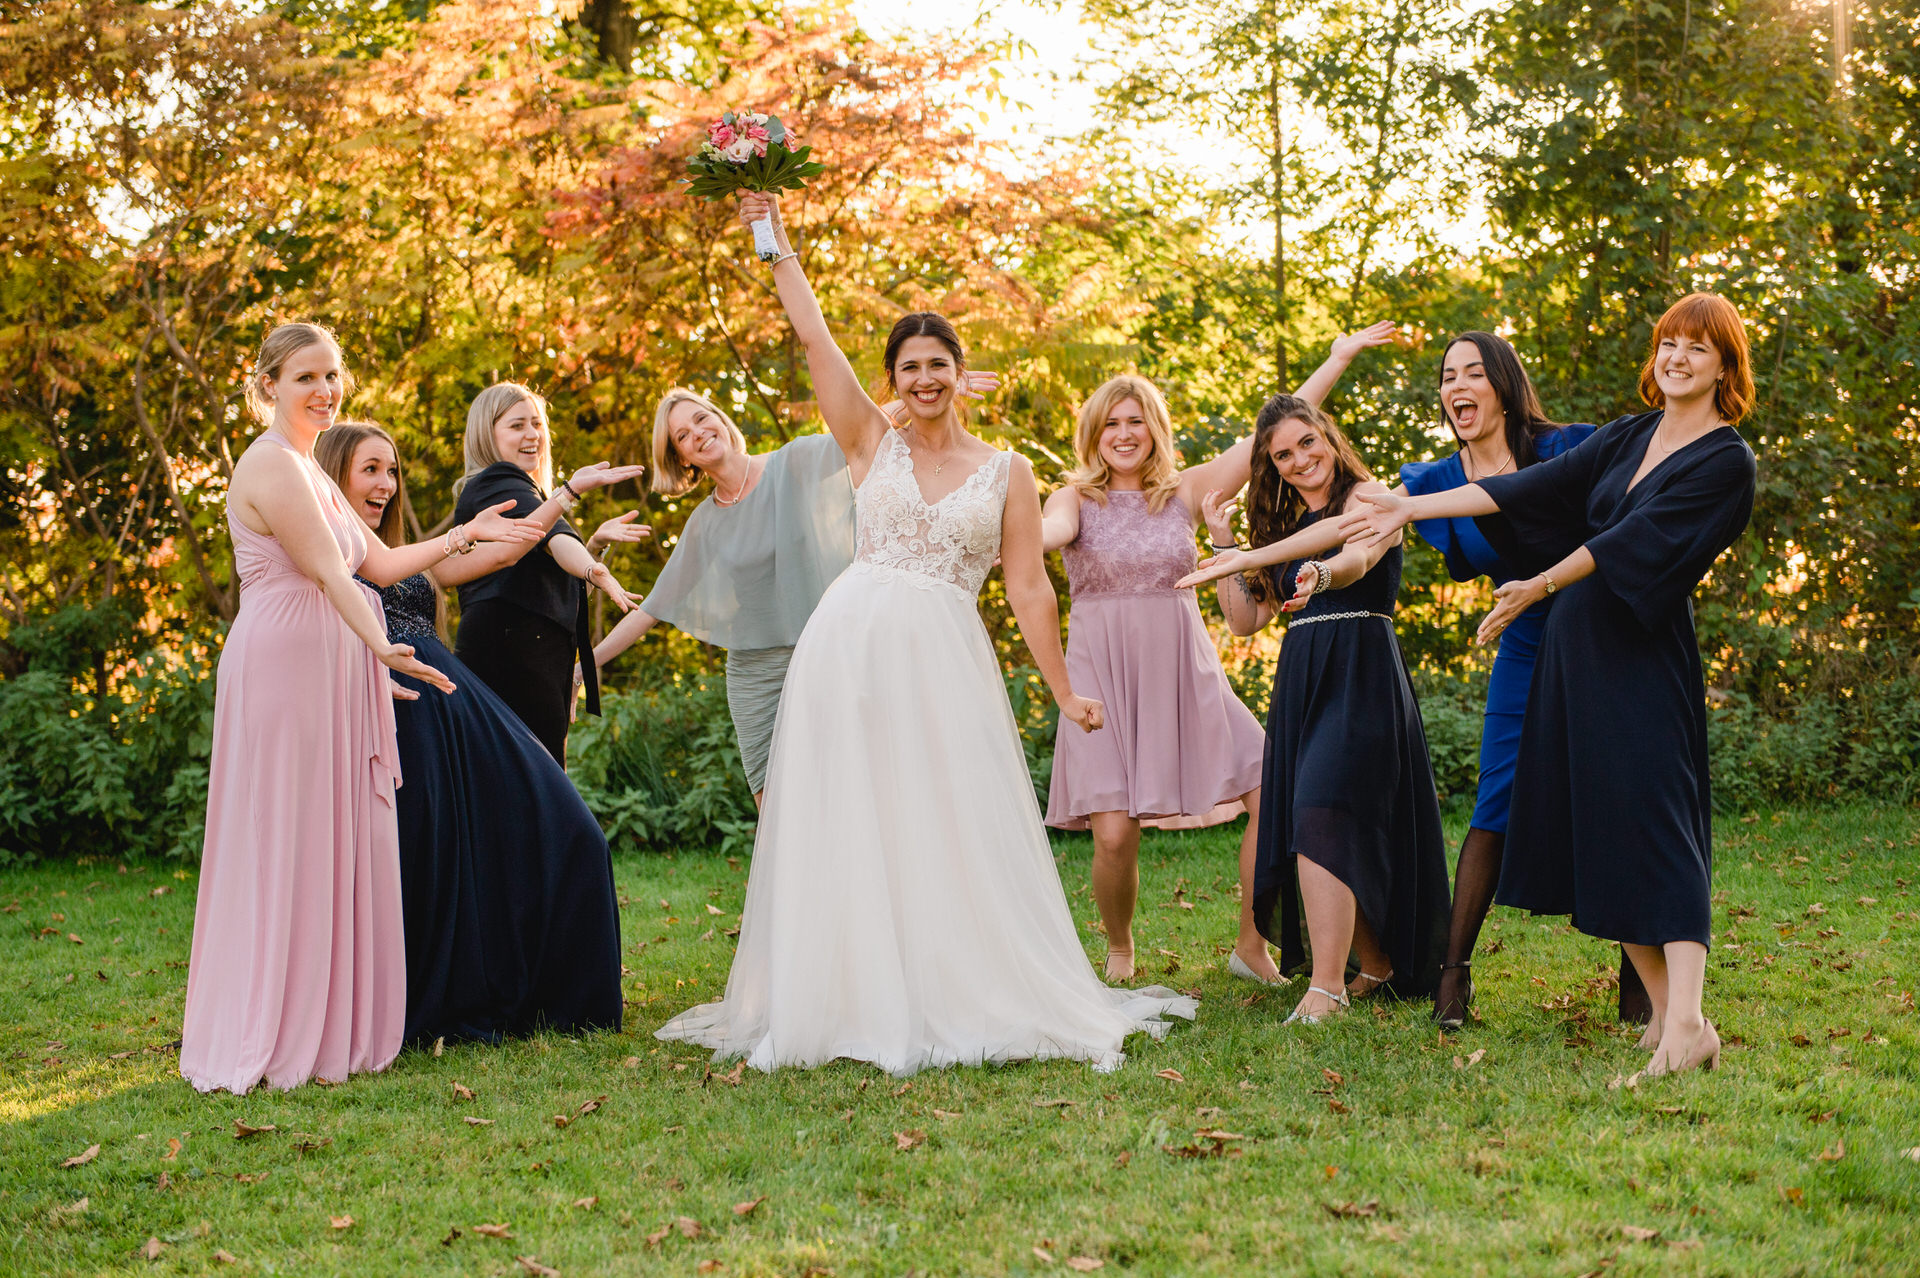 Eine Braut und ihre Brautjungfern halten ihre Blumensträuße in die Luft.